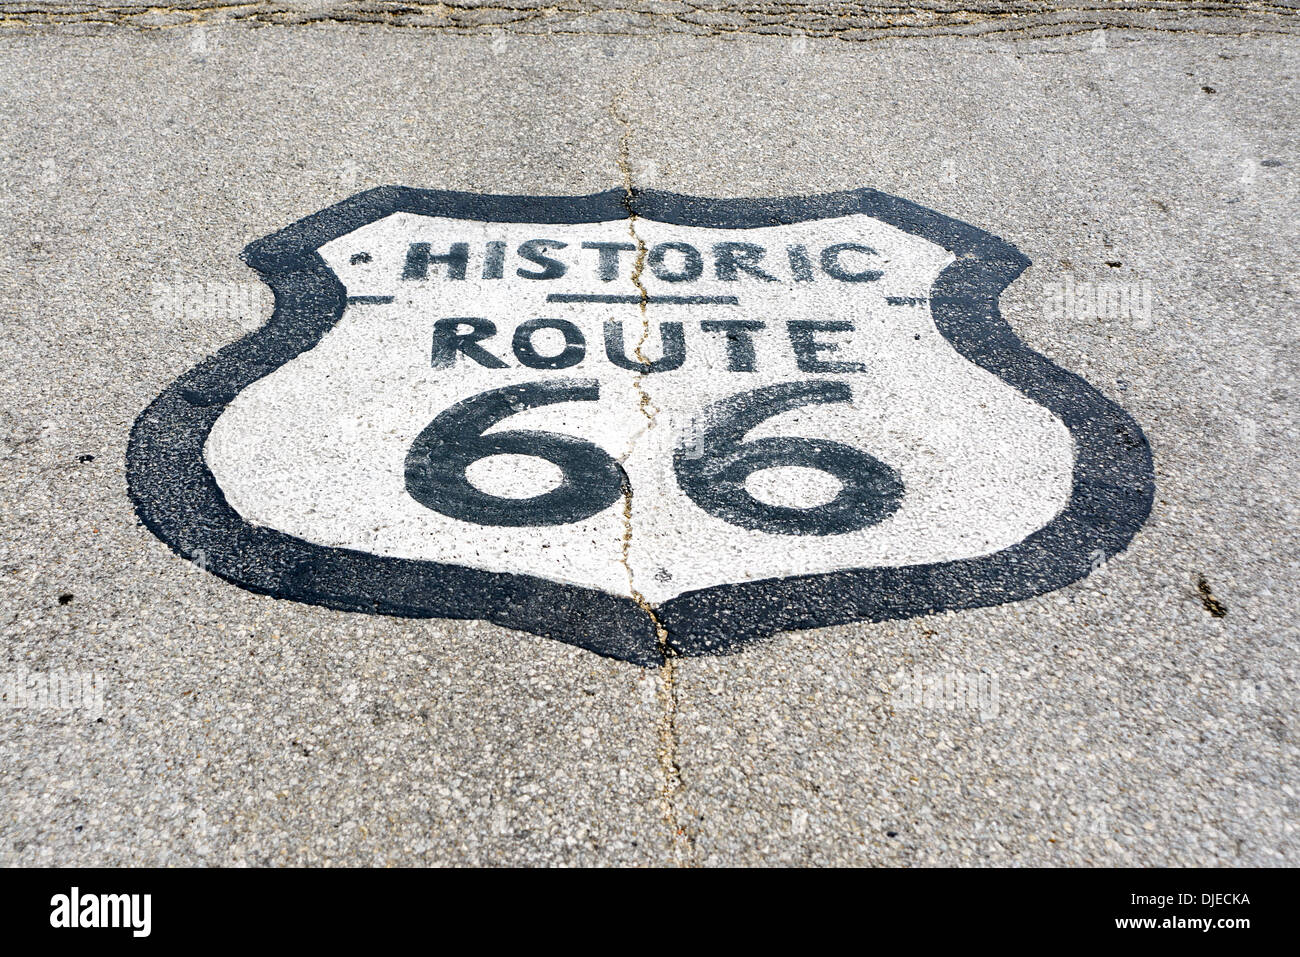 Photo ensoleillée de l'historique Route 66 road sign peints sur une route goudronnée sur le tronçon de la Route 66 entre Chicago, Illinois et St Louis, Missouri Banque D'Images